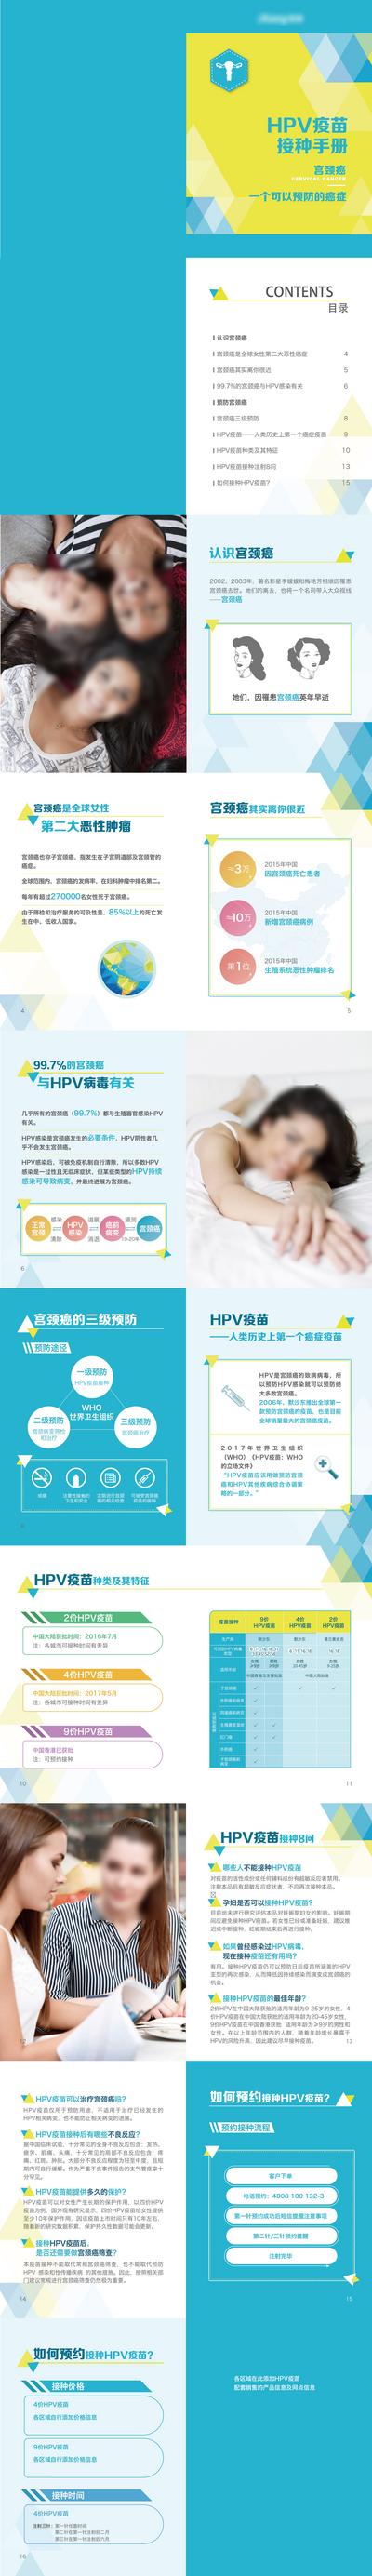 【南门网】广告 海报 专题 HPV 疫苗 接种 宫颈癌 女性 手册 折页 DM